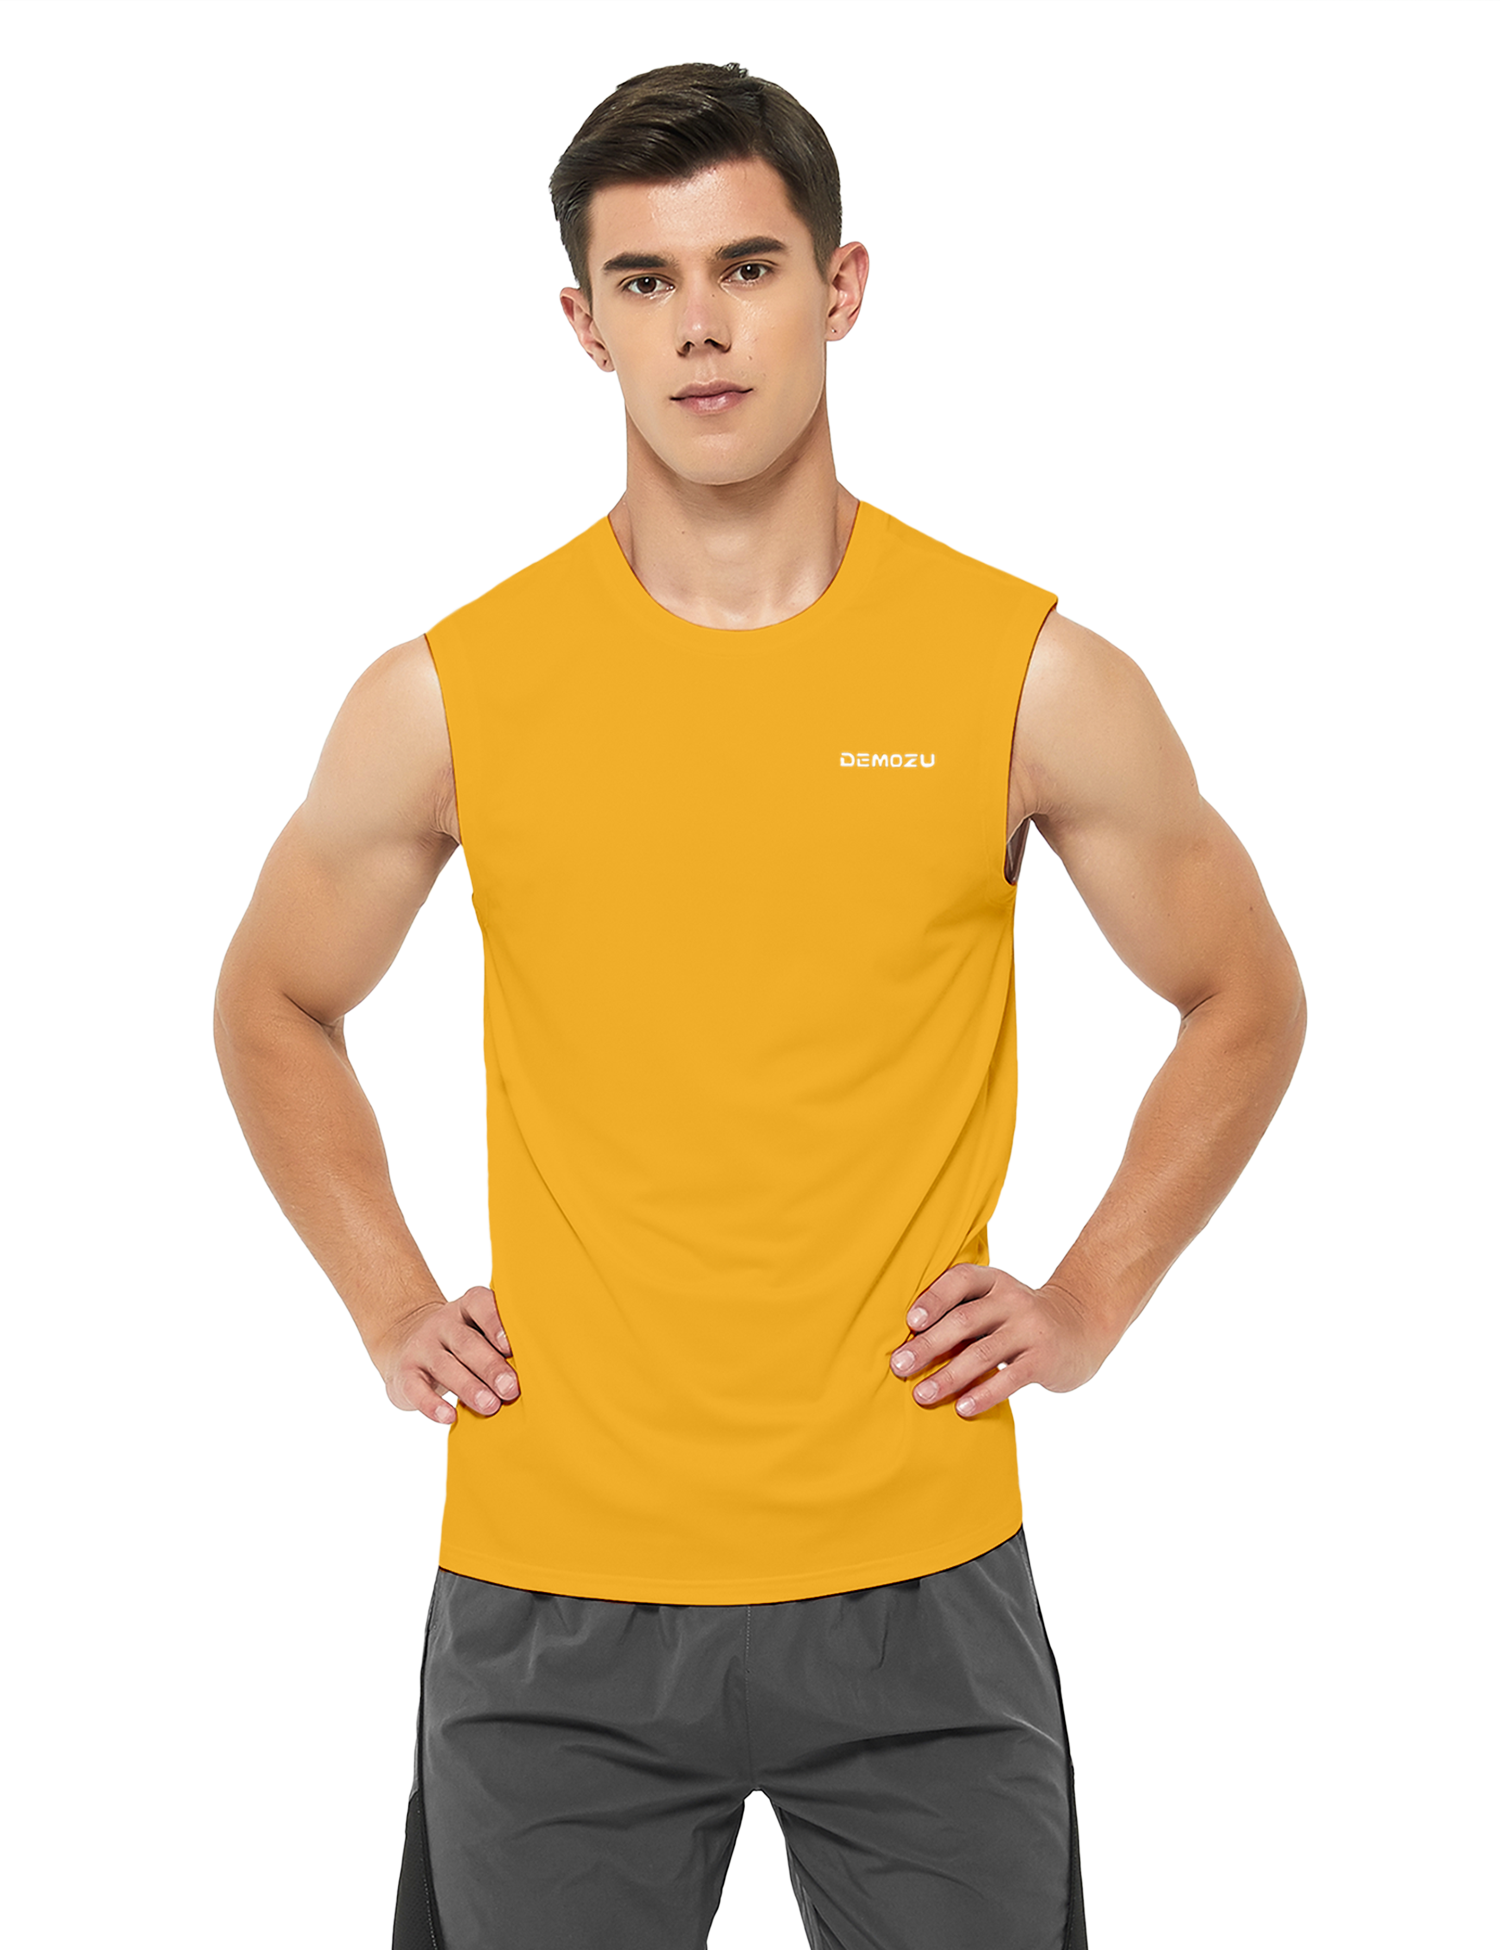 mens sleeveless workout swim shirts yellow